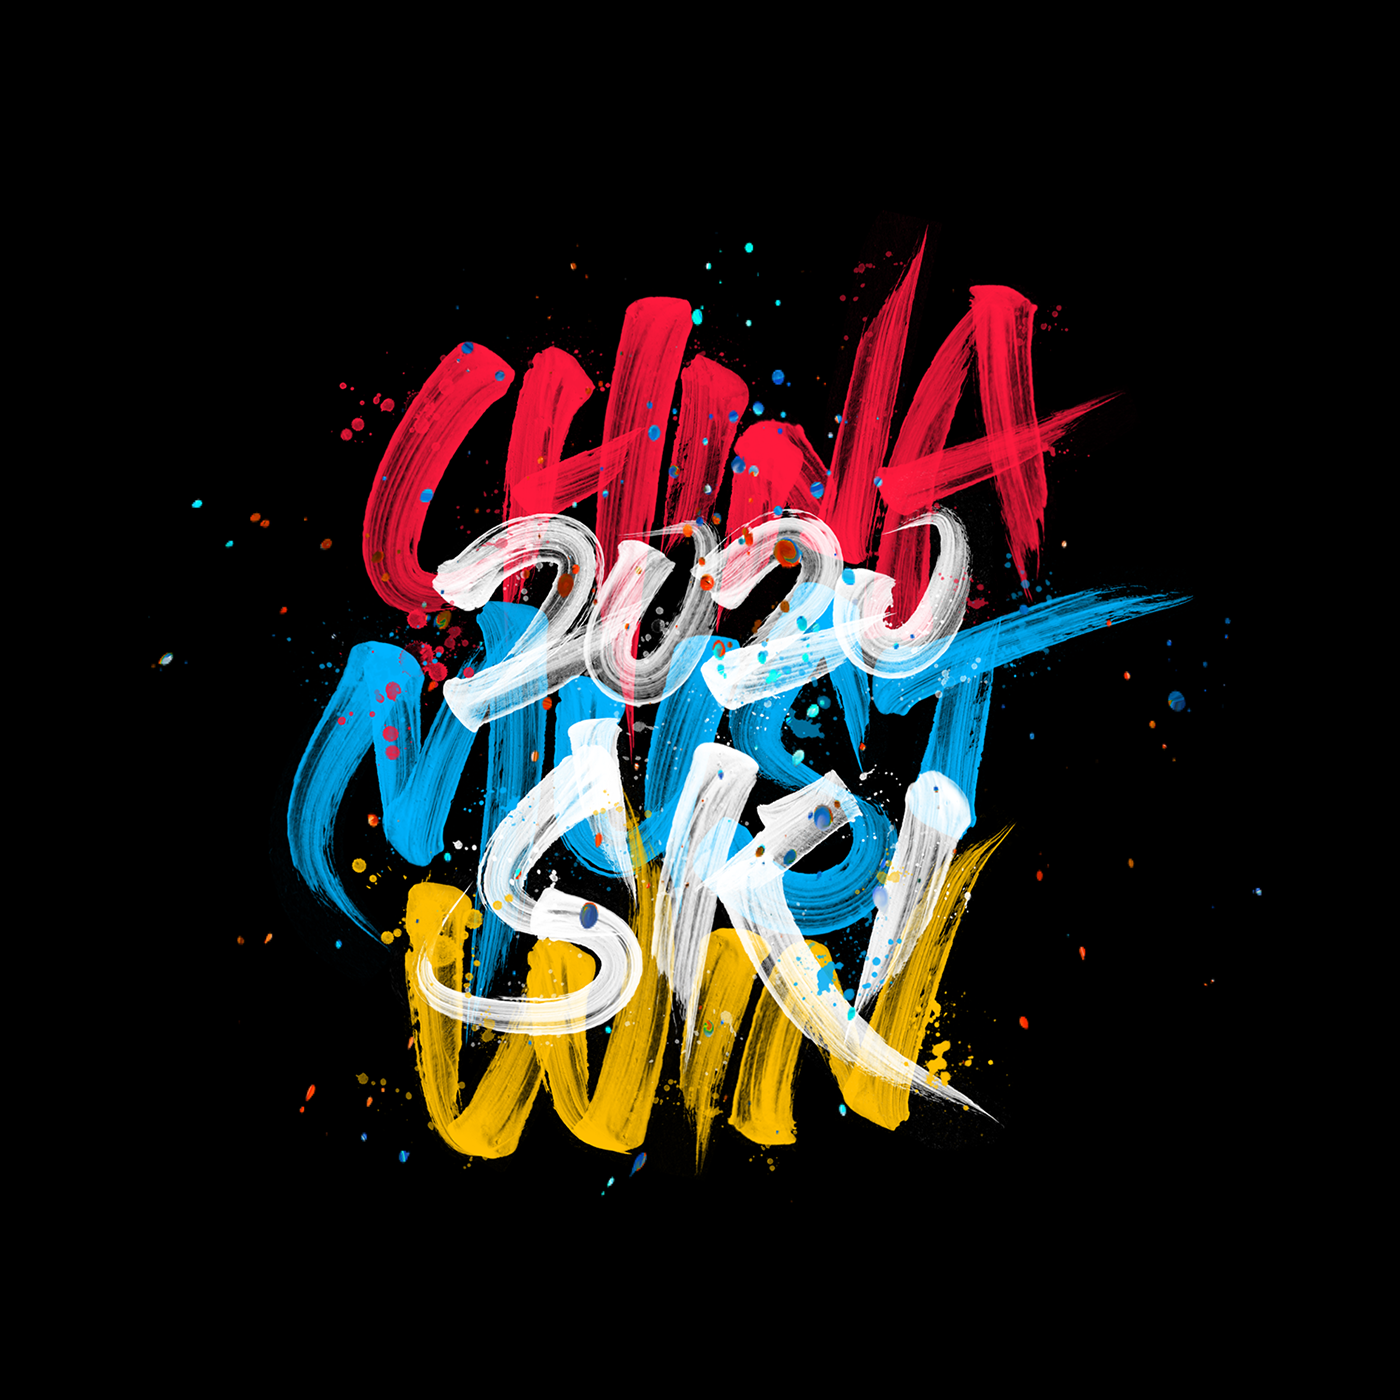 Design of splash-ink font with strong color sense